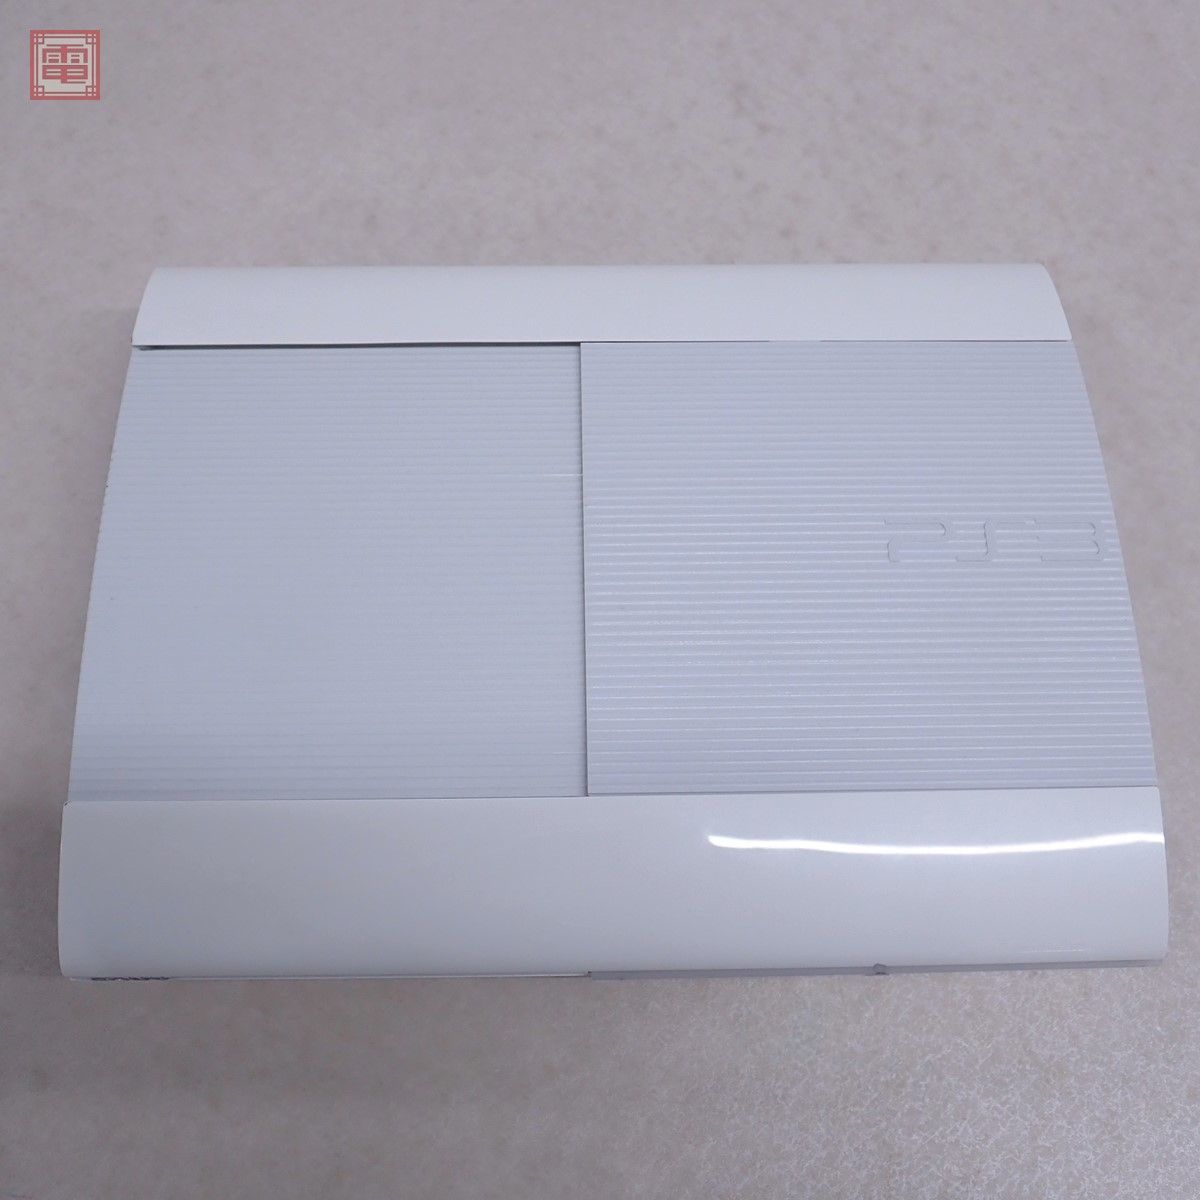 PS3 プレステ3 クラシック・ホワイト 本体のみ CECH-4200B HDDなし 通電のみ確認済 ソニー SONY ジャンク【20_画像1